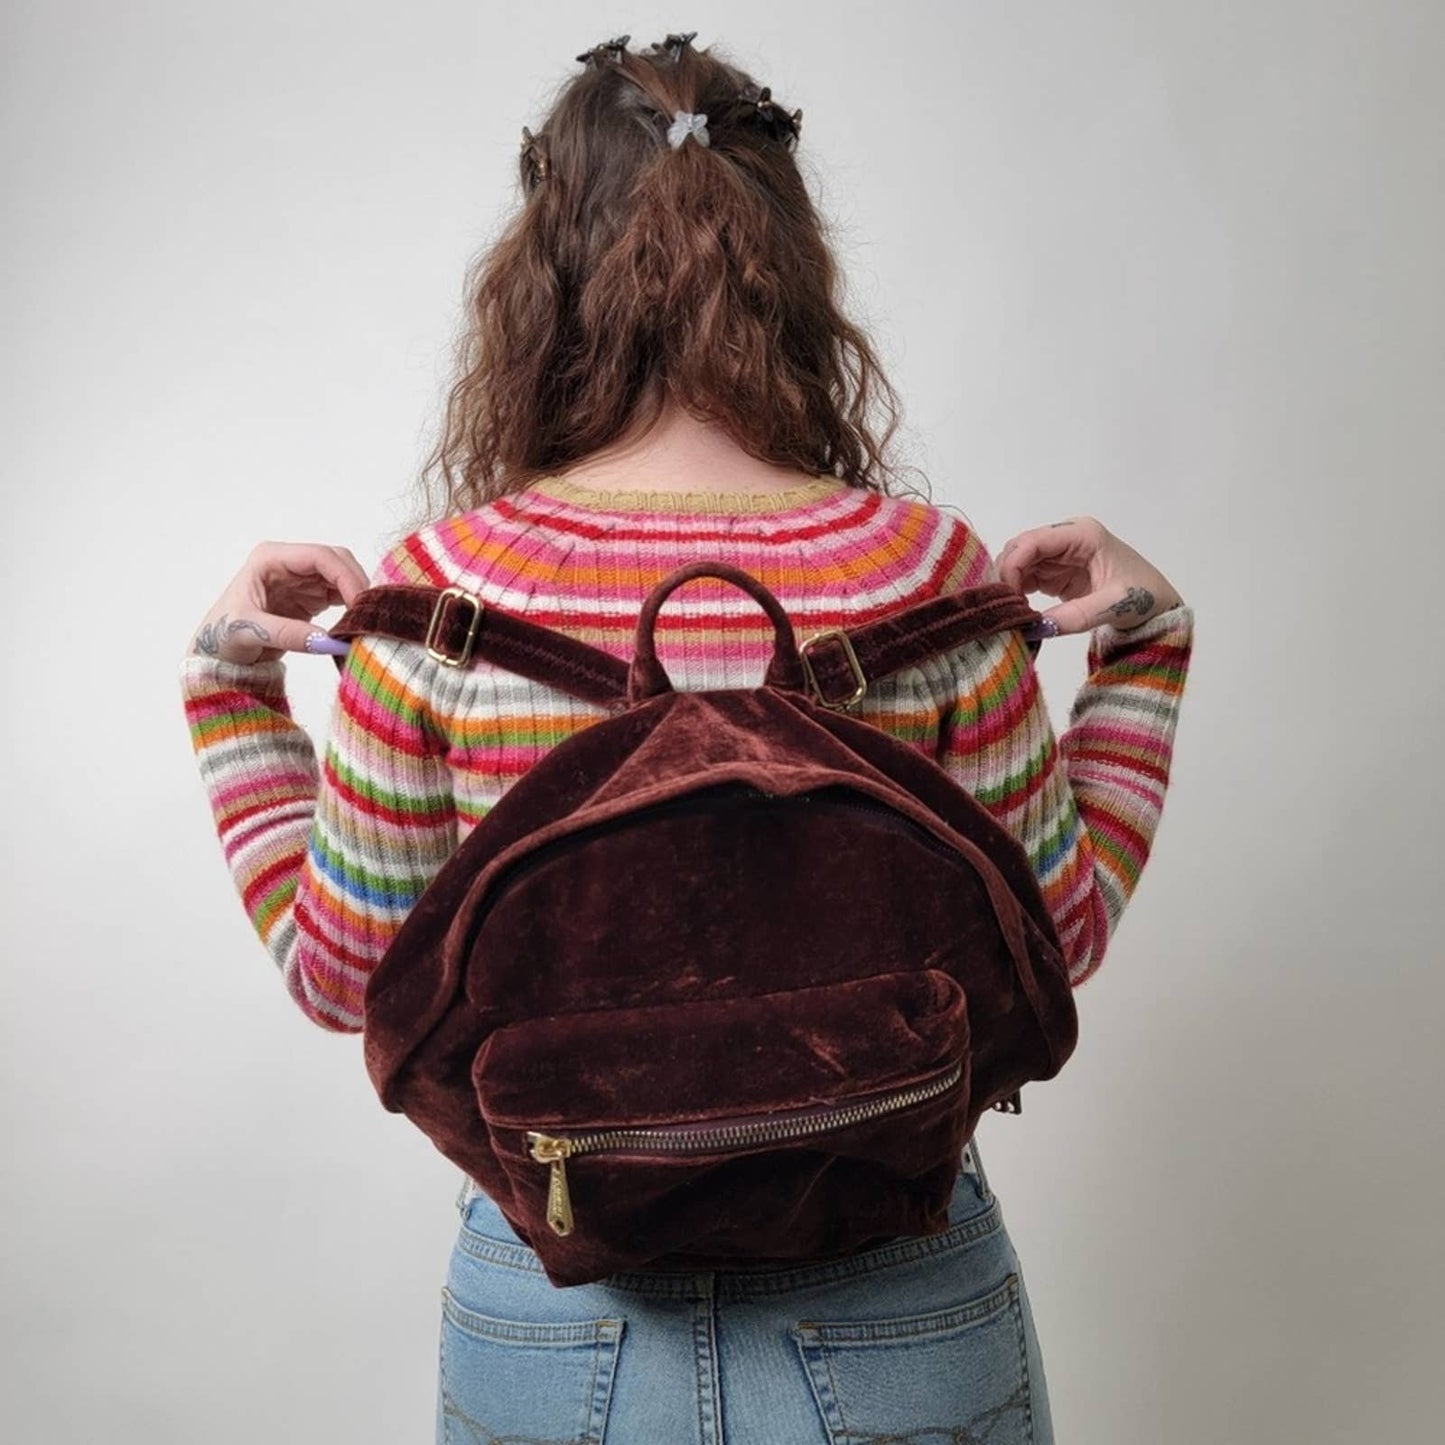 Vintage Y2K Aimee Kestenberg Woodside Velvet Mini Backpack